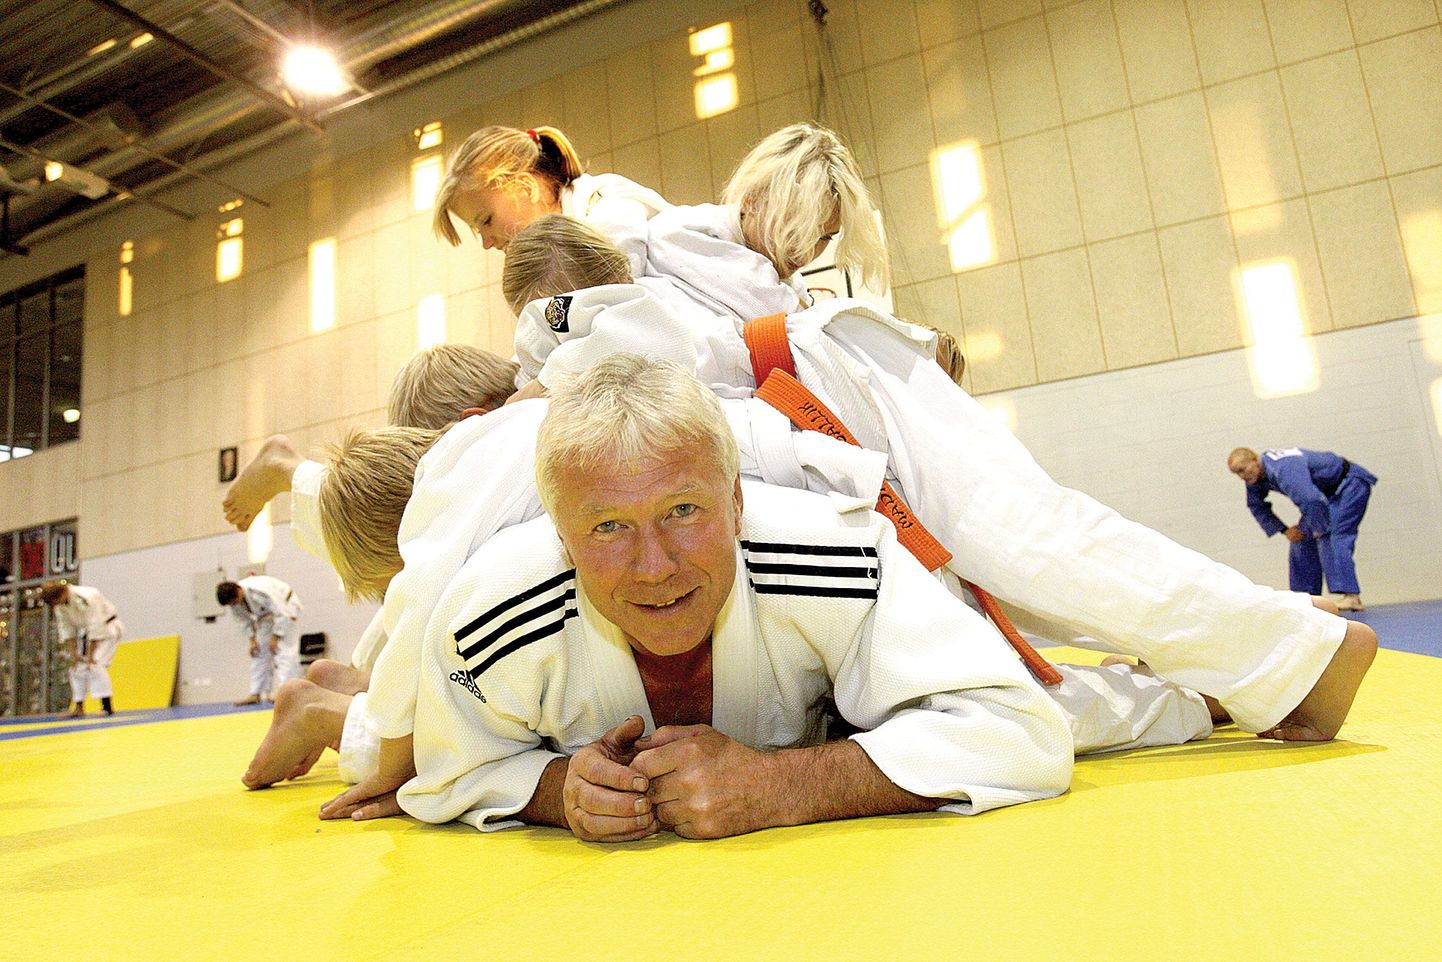 Kuigi judotreener Andres Põhjalale on tehtud väga ahvatlevaid pakkumisi Soomest, Norrast ja Saksamaalt, on Do klubi ja selle kasvandikud teda ikka Tartus hoidnud. Oma kalakohti ei raatsi mees ka maha jätta.